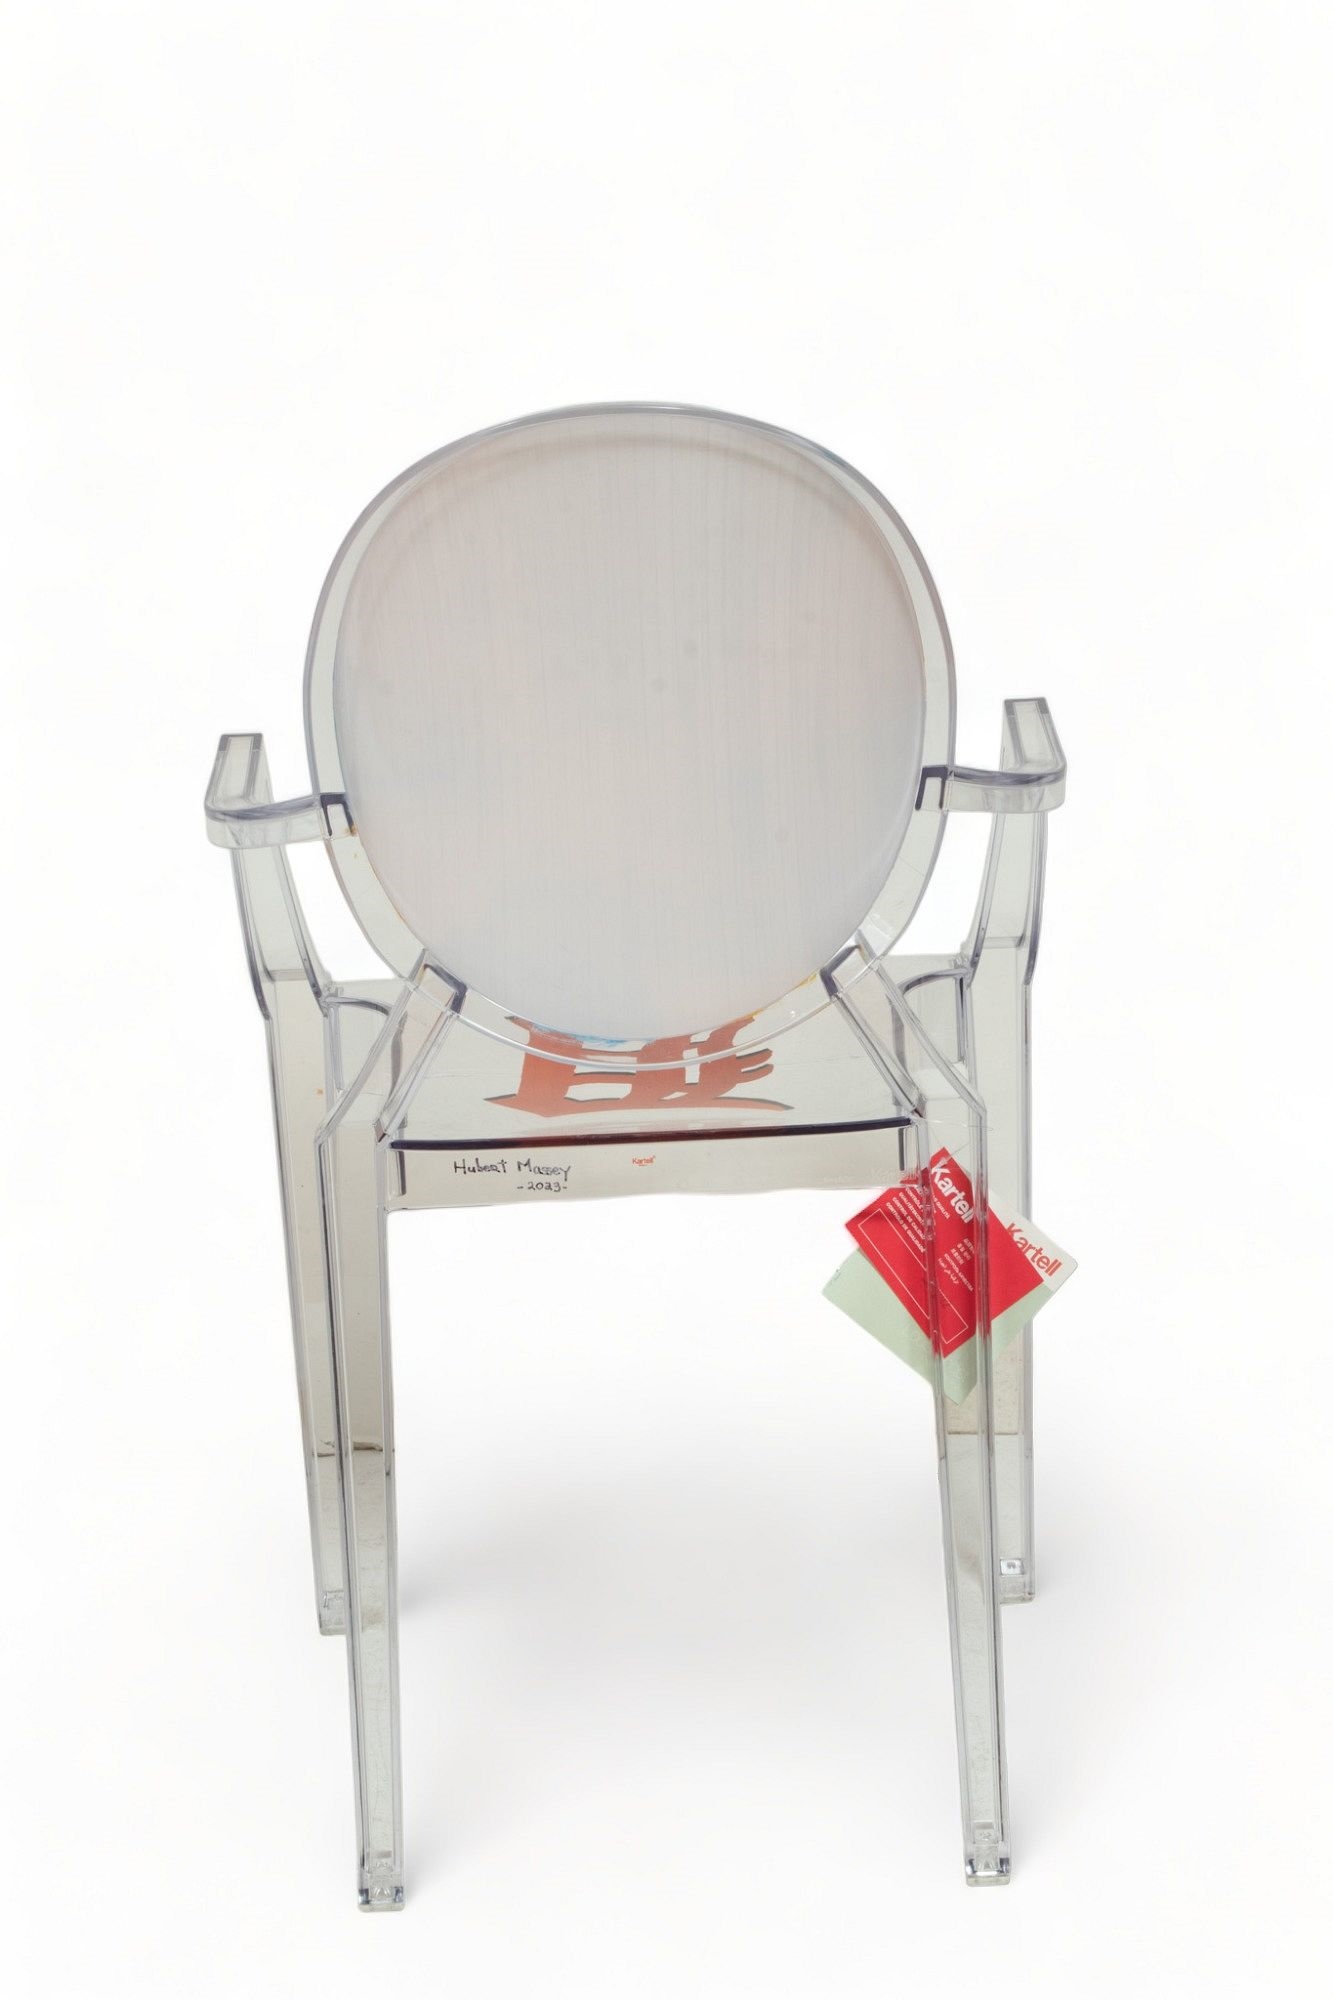 Artwork by Hubert Massey, Hubert Massey (Detroit, Michigan, B. 1958) Philippe Starck Louis Ghost Chairs for Kartell (Italian) H 36.5" W 21.5" Depth 17"